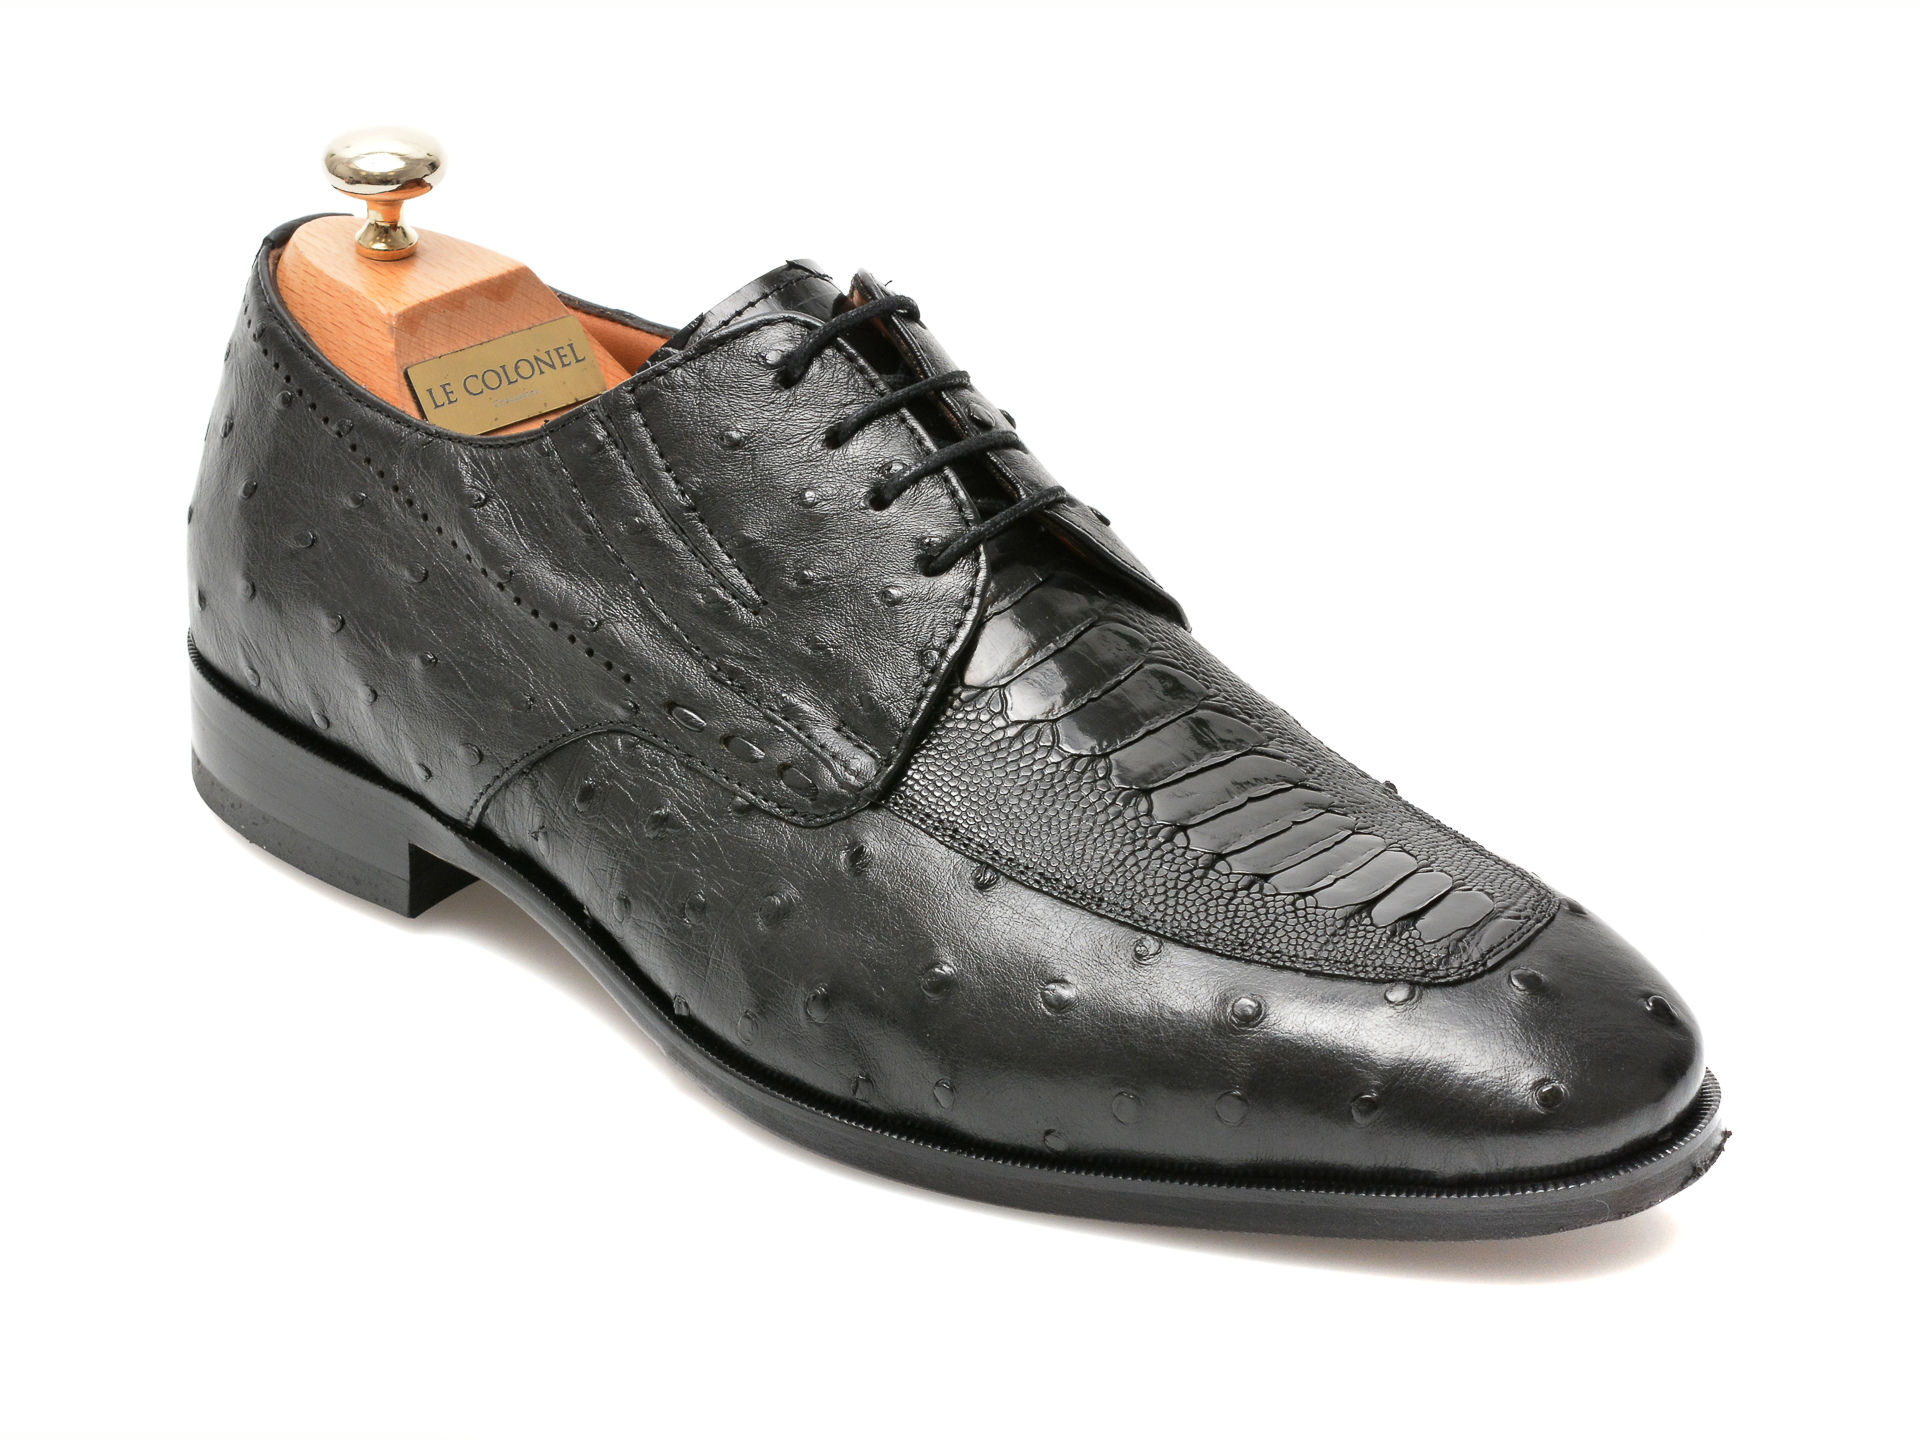 Pantofi LE COLONEL negri, 48701, din piele naturala Le Colonel Le Colonel